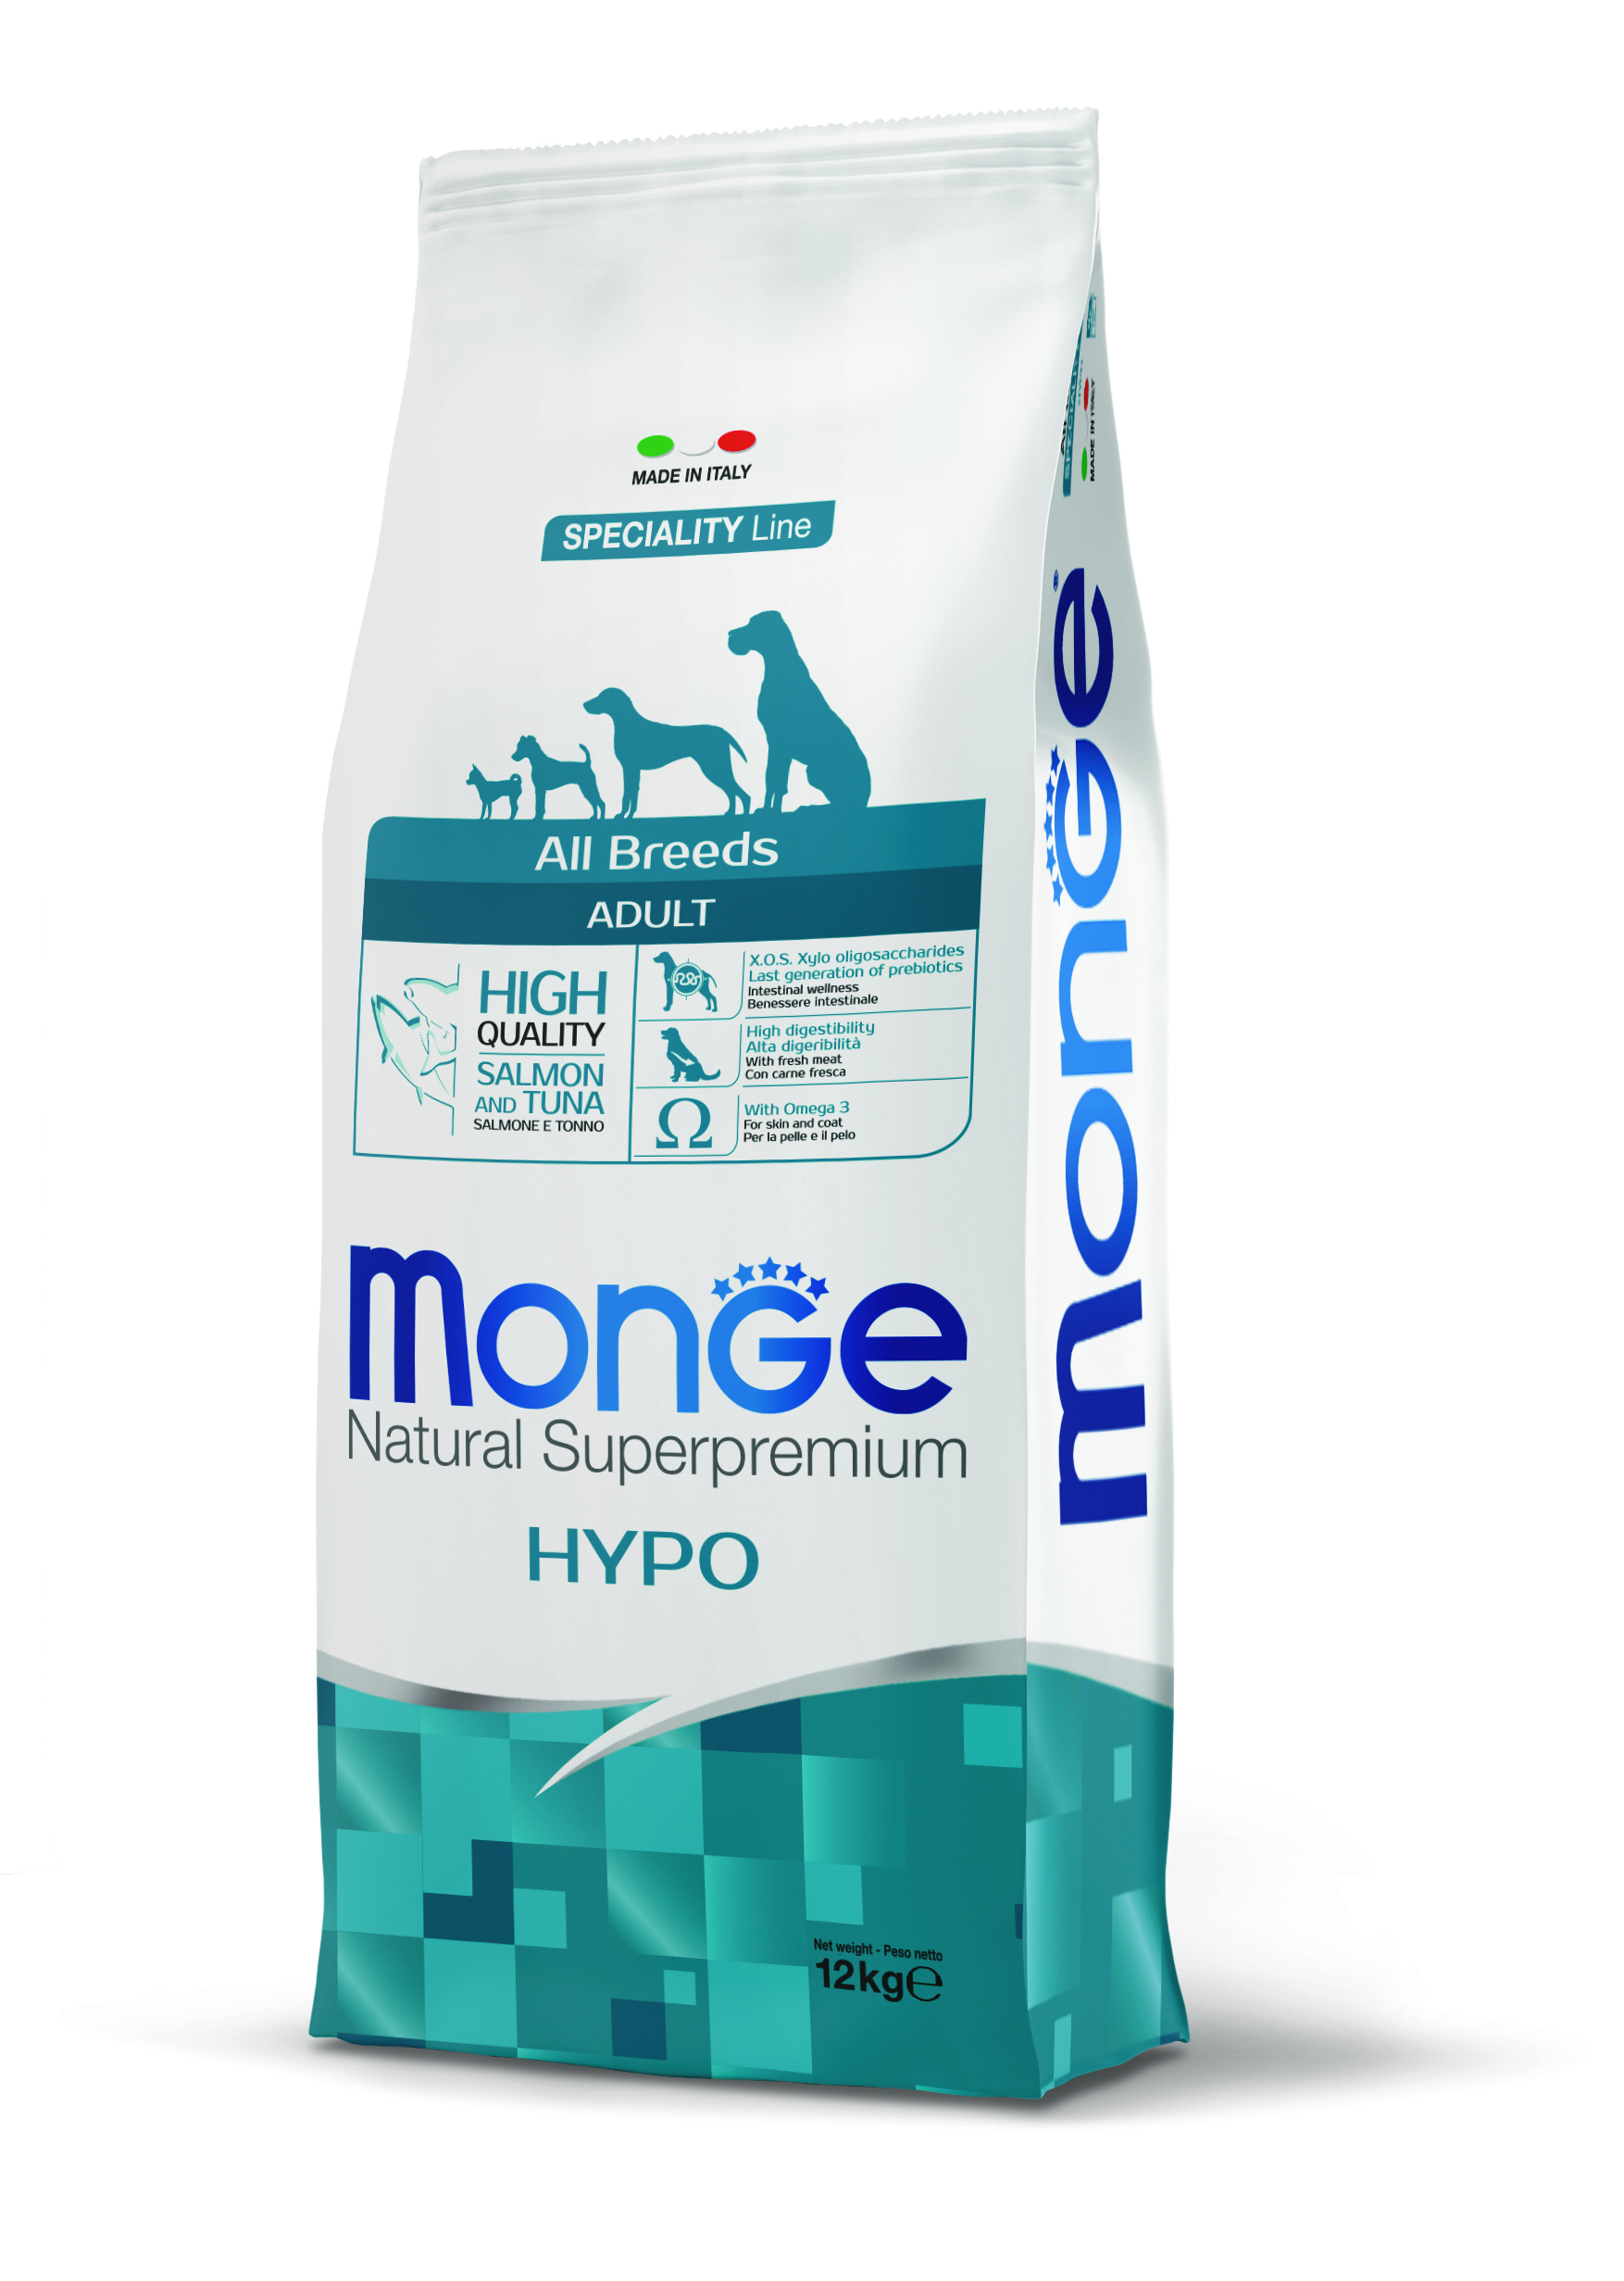 Сухой корм для собак монже. Monge Dog Speciality Hypoallergenic корм для собак гипоаллергенный лосось с тунцом. Сухой корм для собак Monge Speciality line. Monge корм для собак лосось 12 кг гипоаллергенный. Monge корм для собак гипоаллергенный.